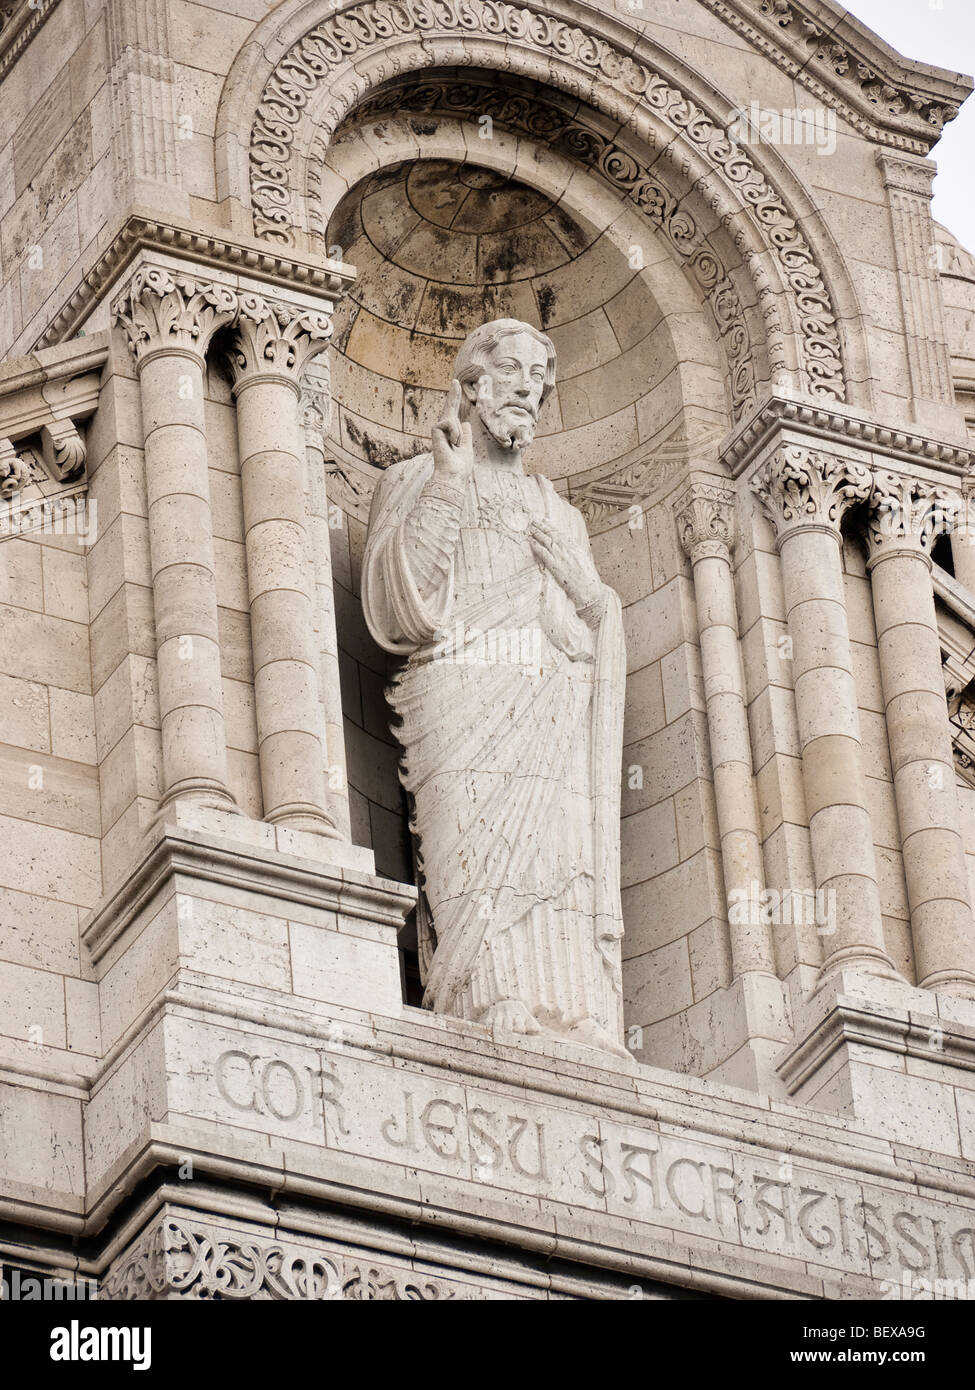 Estatua de Jesús sobre la fachada de la Basílica du Sacré-Coeur París Francia Foto de stock